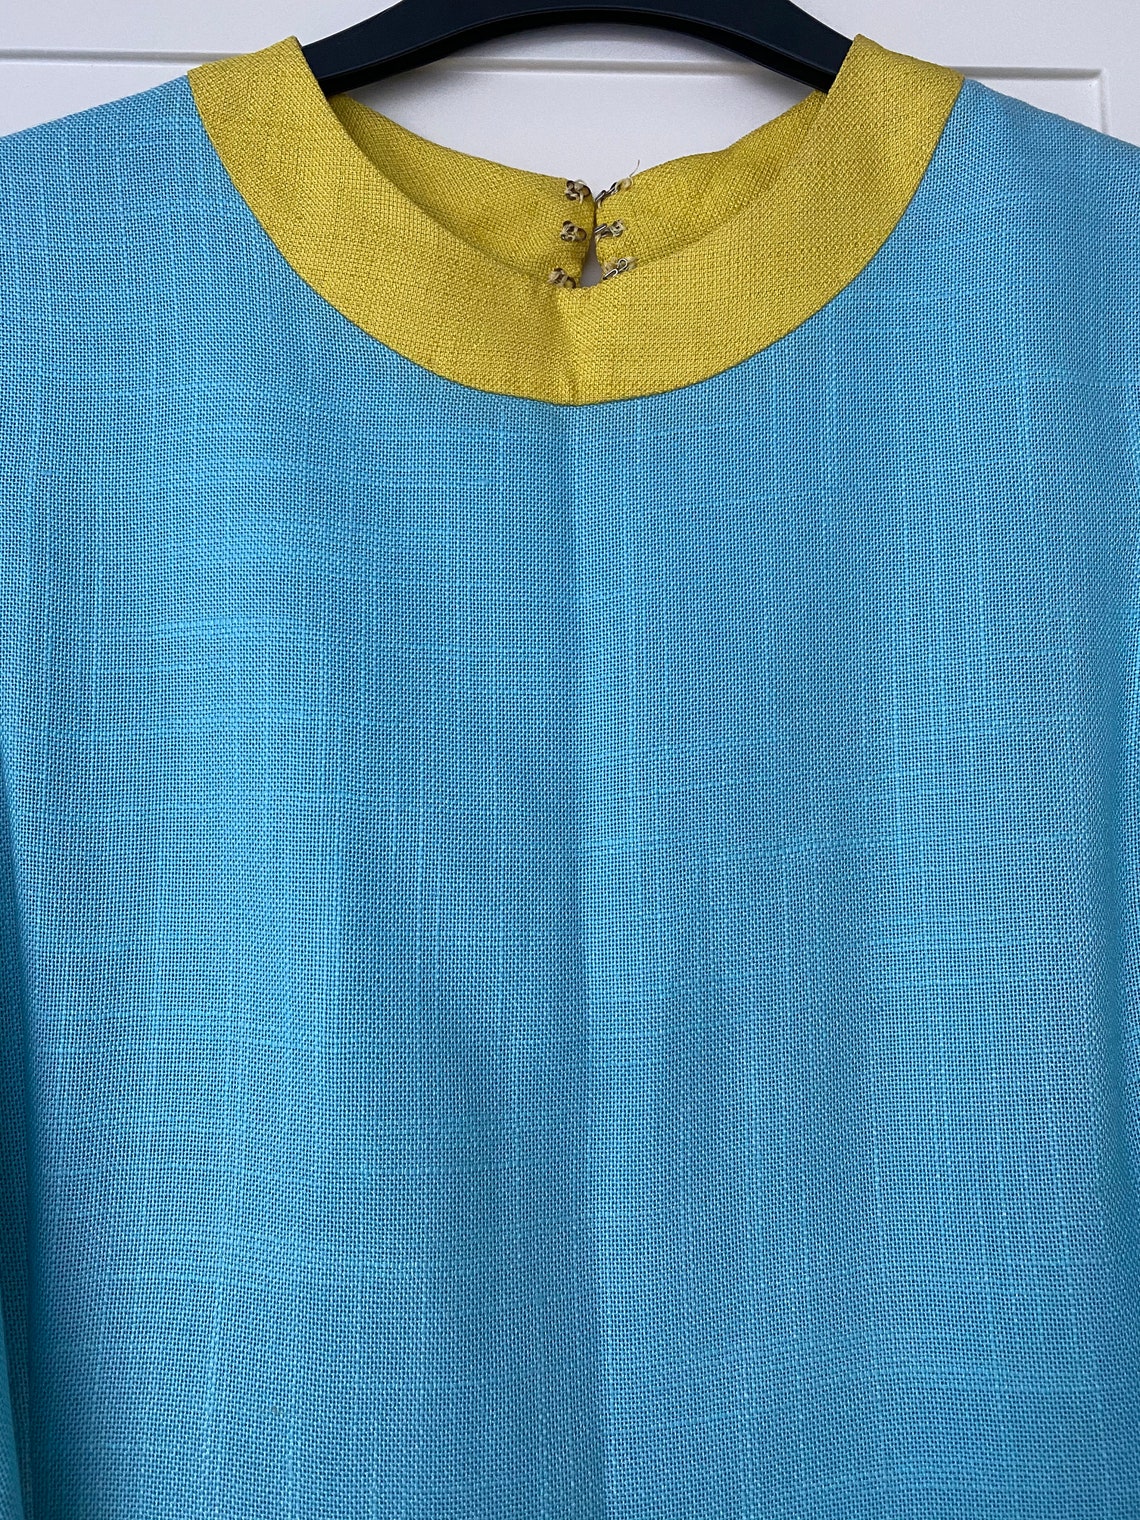 1960s Vintage Aquamarine Dress - Etsy Sweden